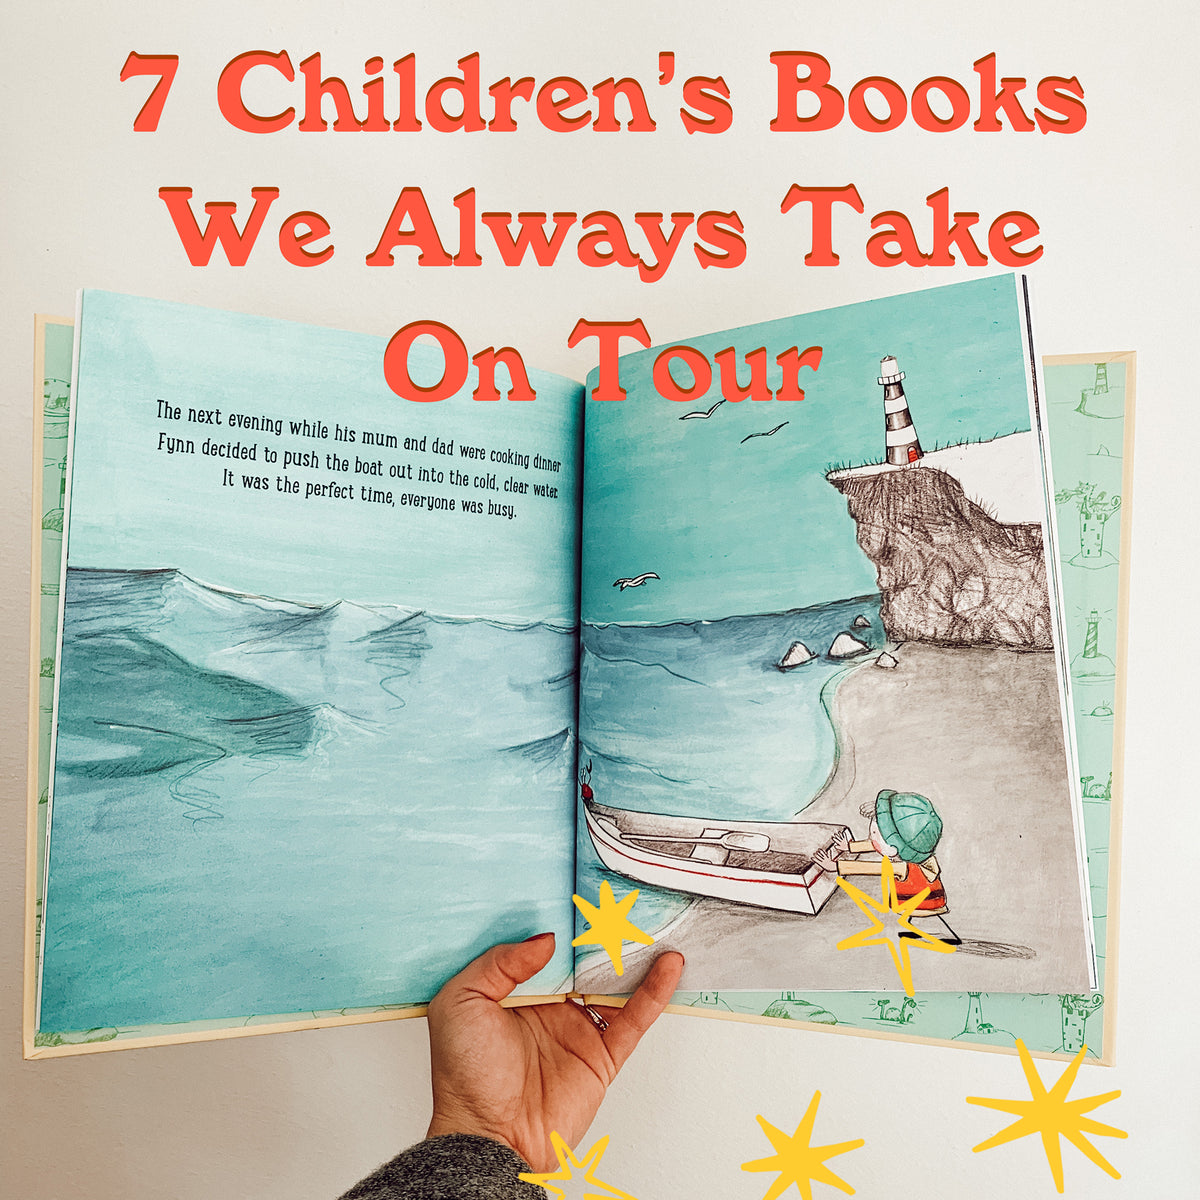 7 Children's Books We Always Take On Tour